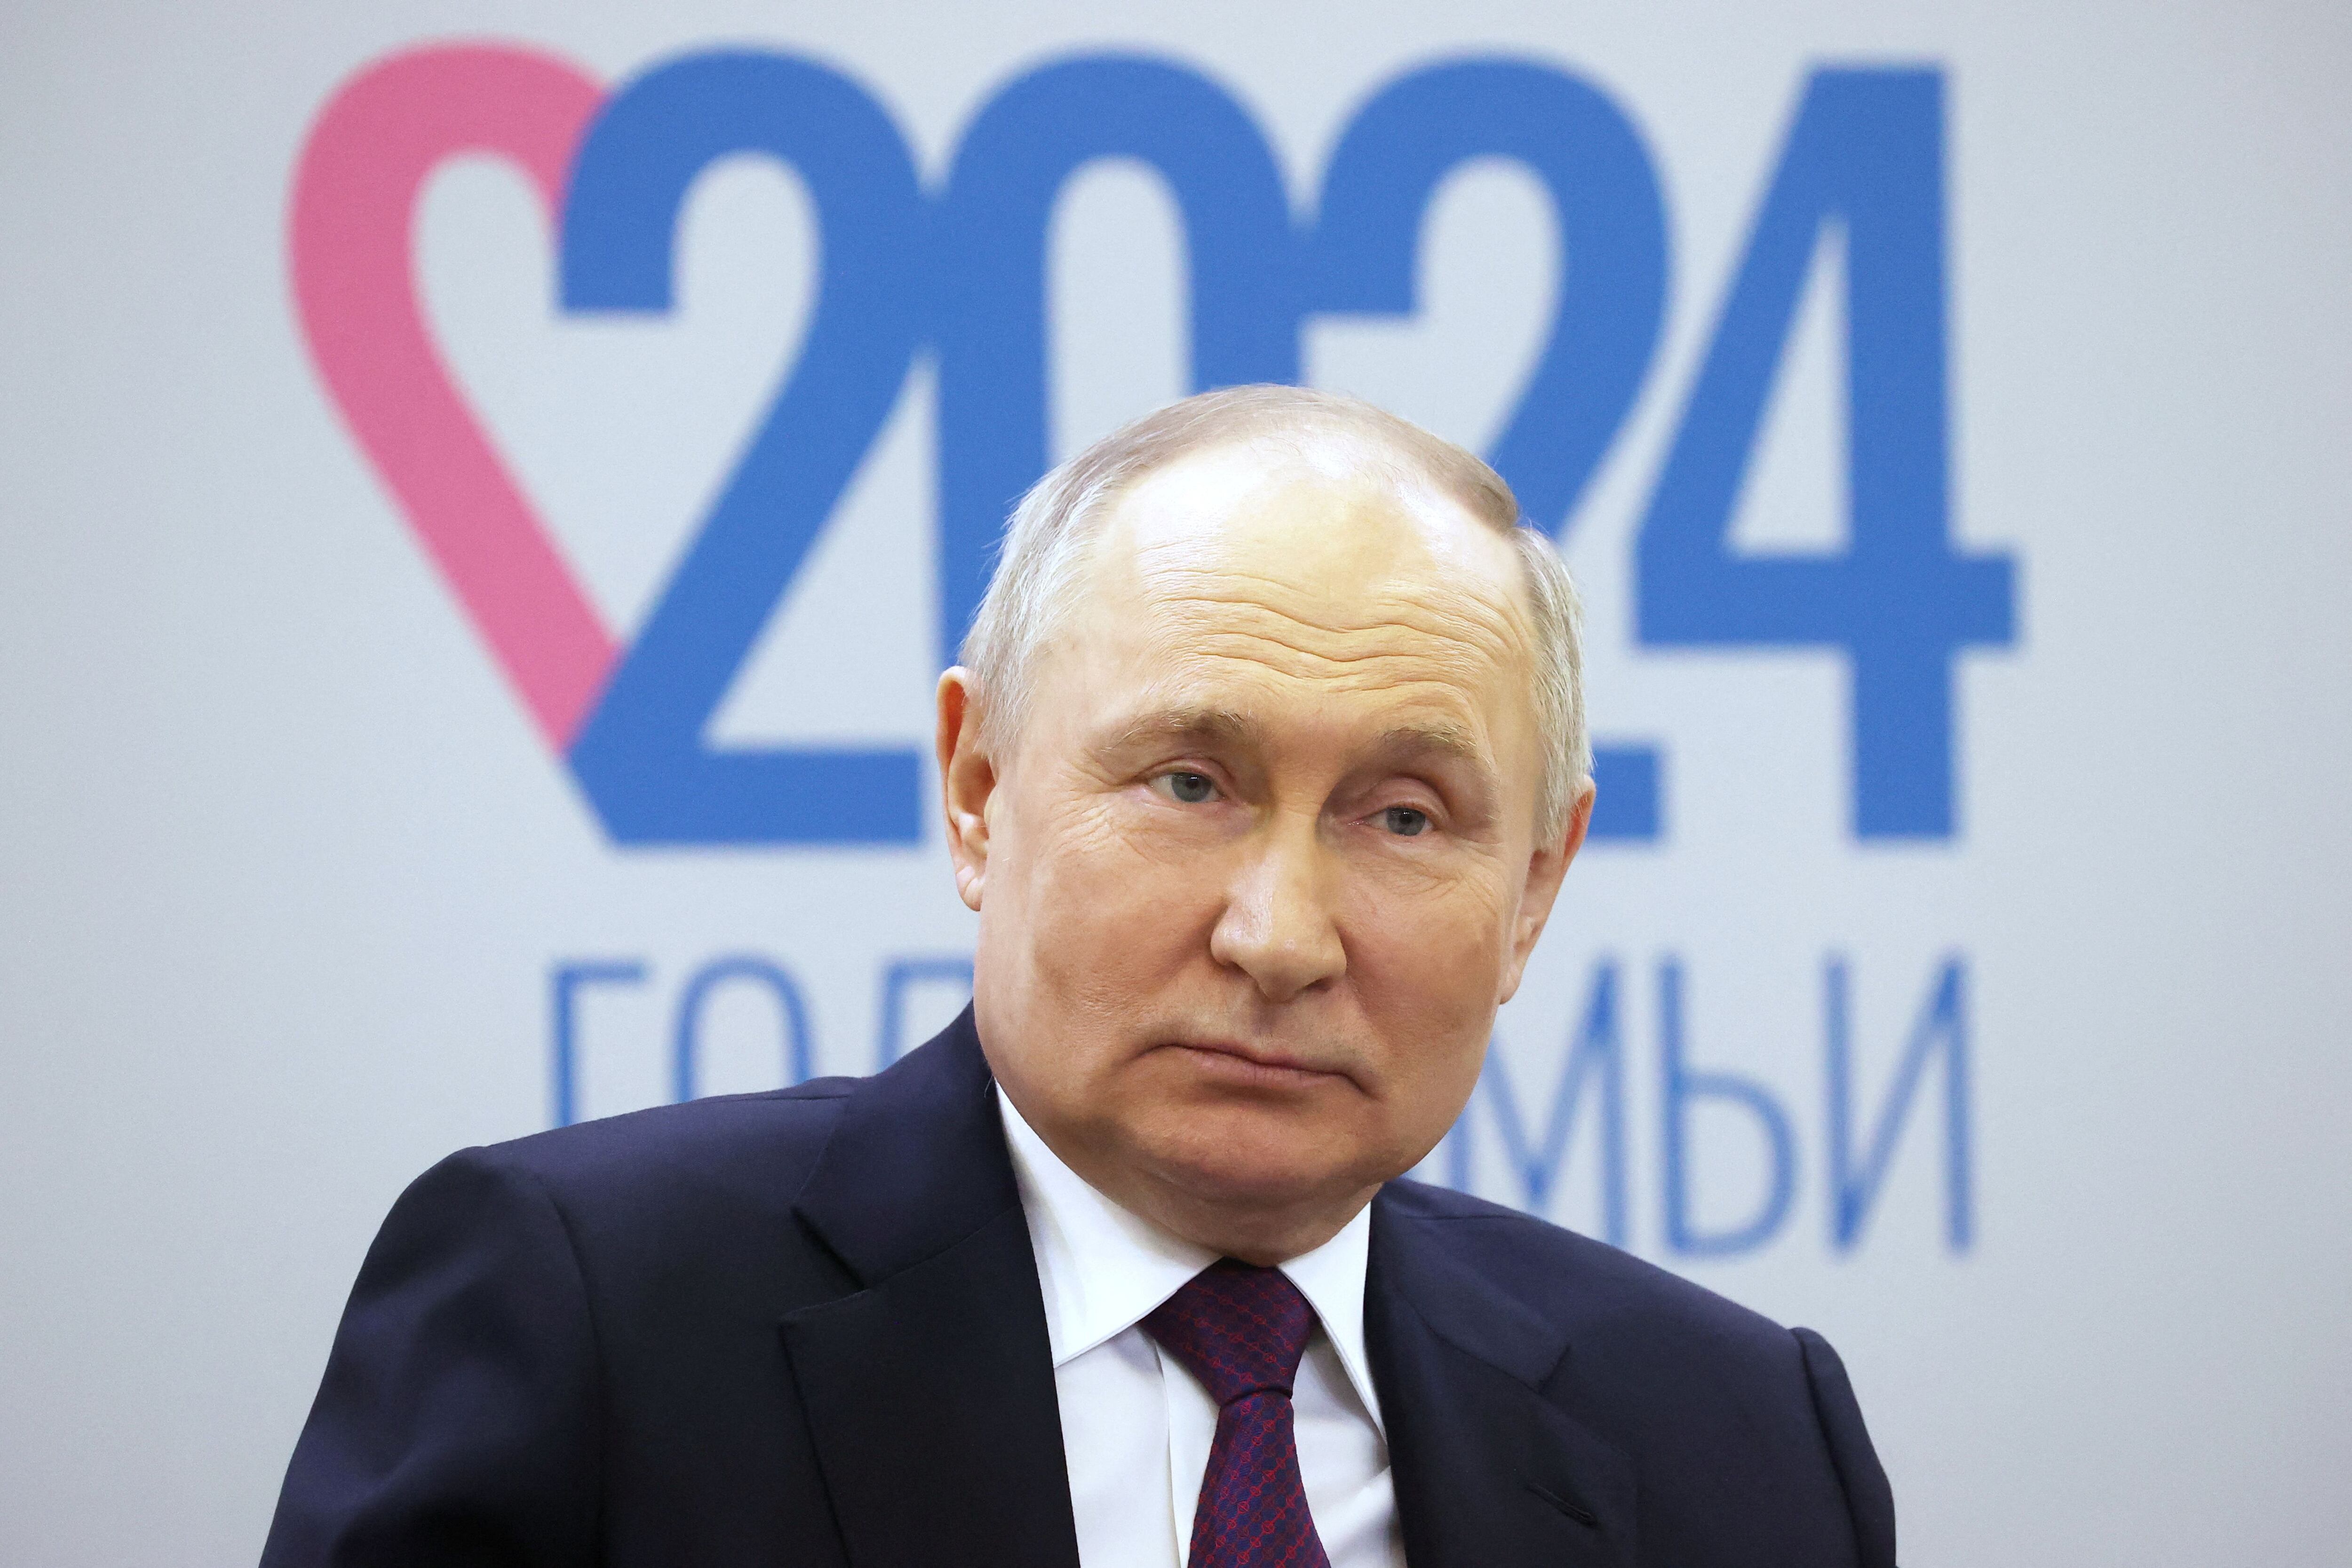 Vladimir Putin durante un foro sobre la familia en Moscú. El jefe de estado ruso invadió Ucrania en febrero de 2022 y aumentó la posibilidad de una guerra nuclear (Reuters)